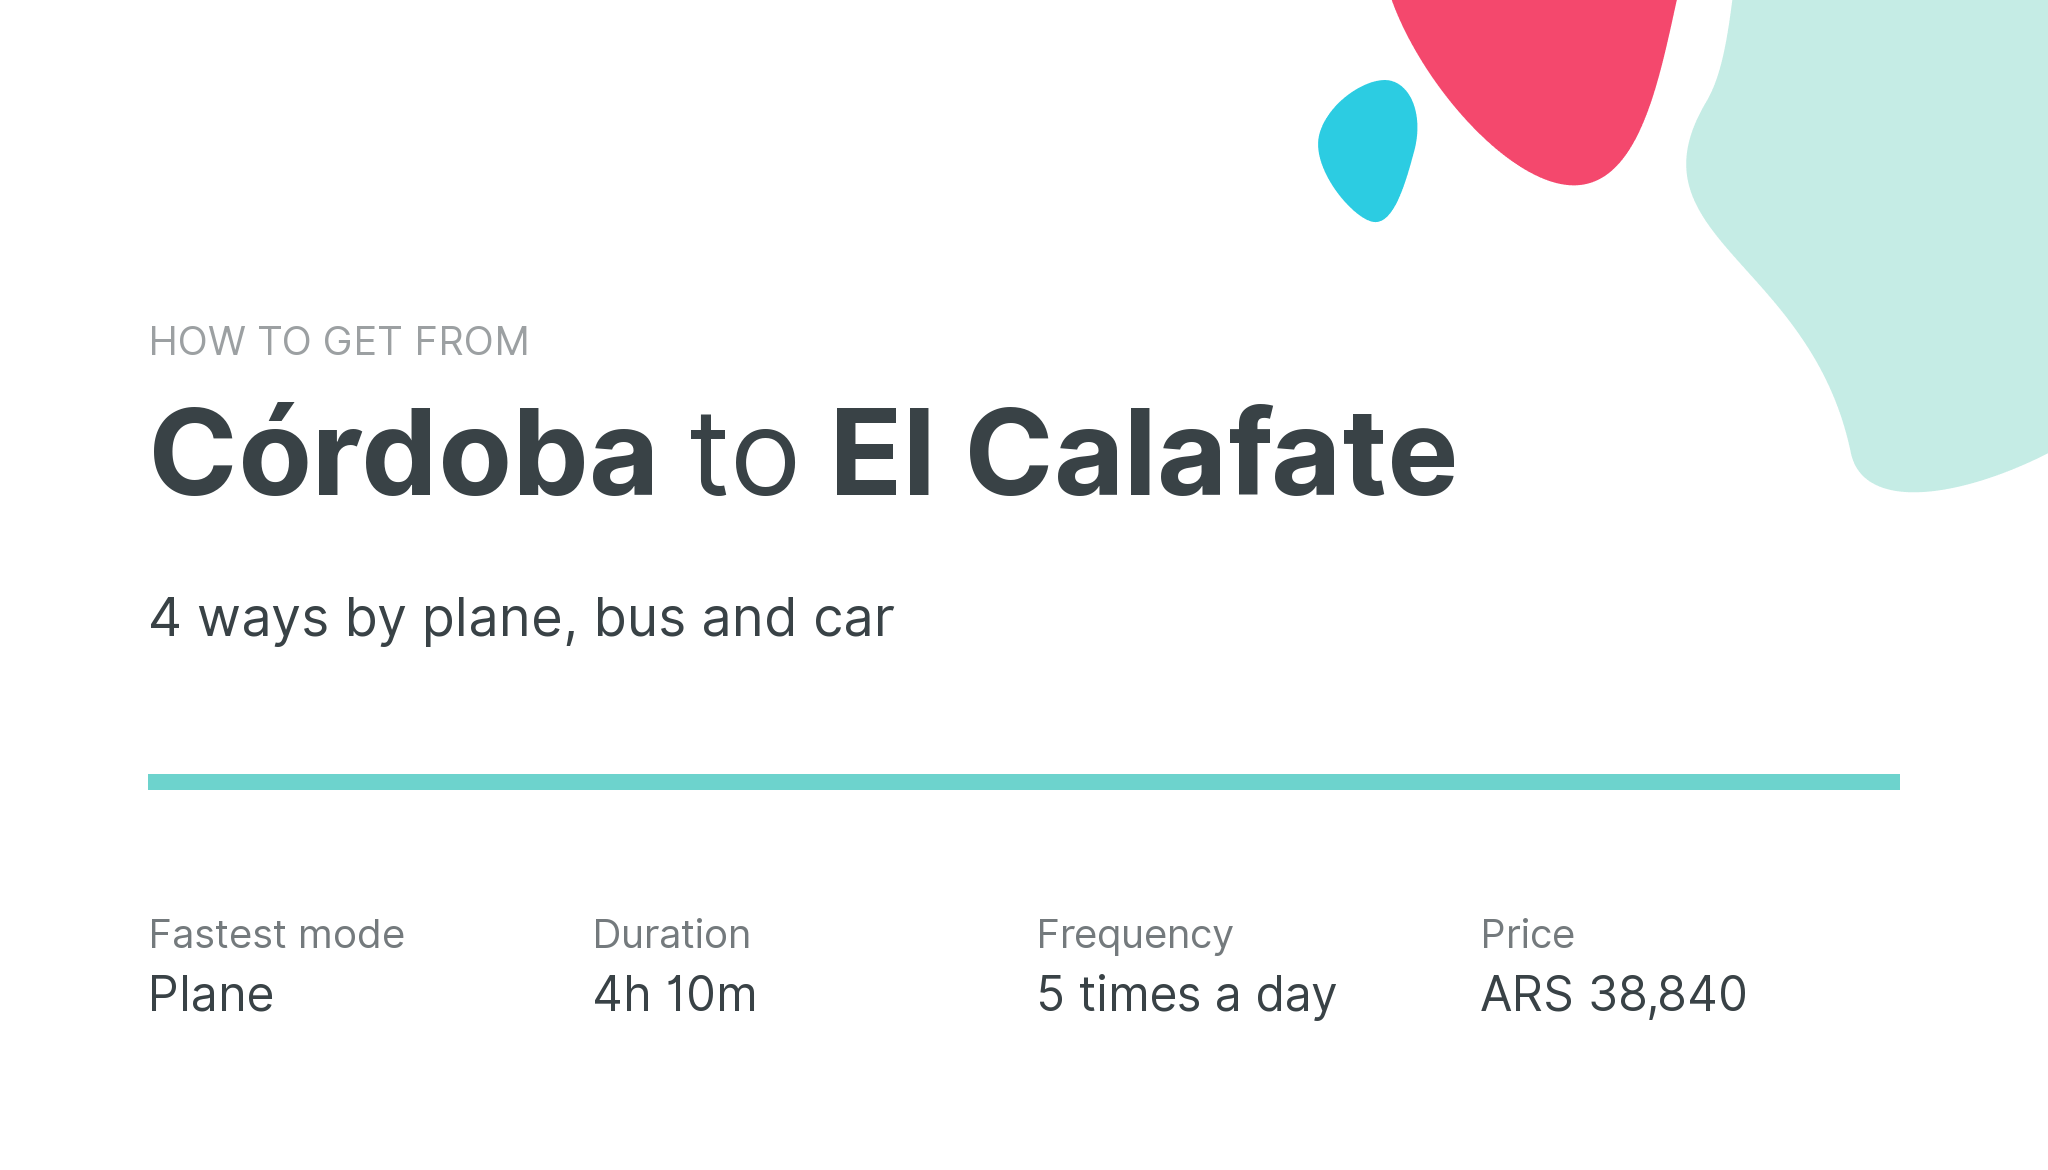 How do I get from Córdoba to El Calafate